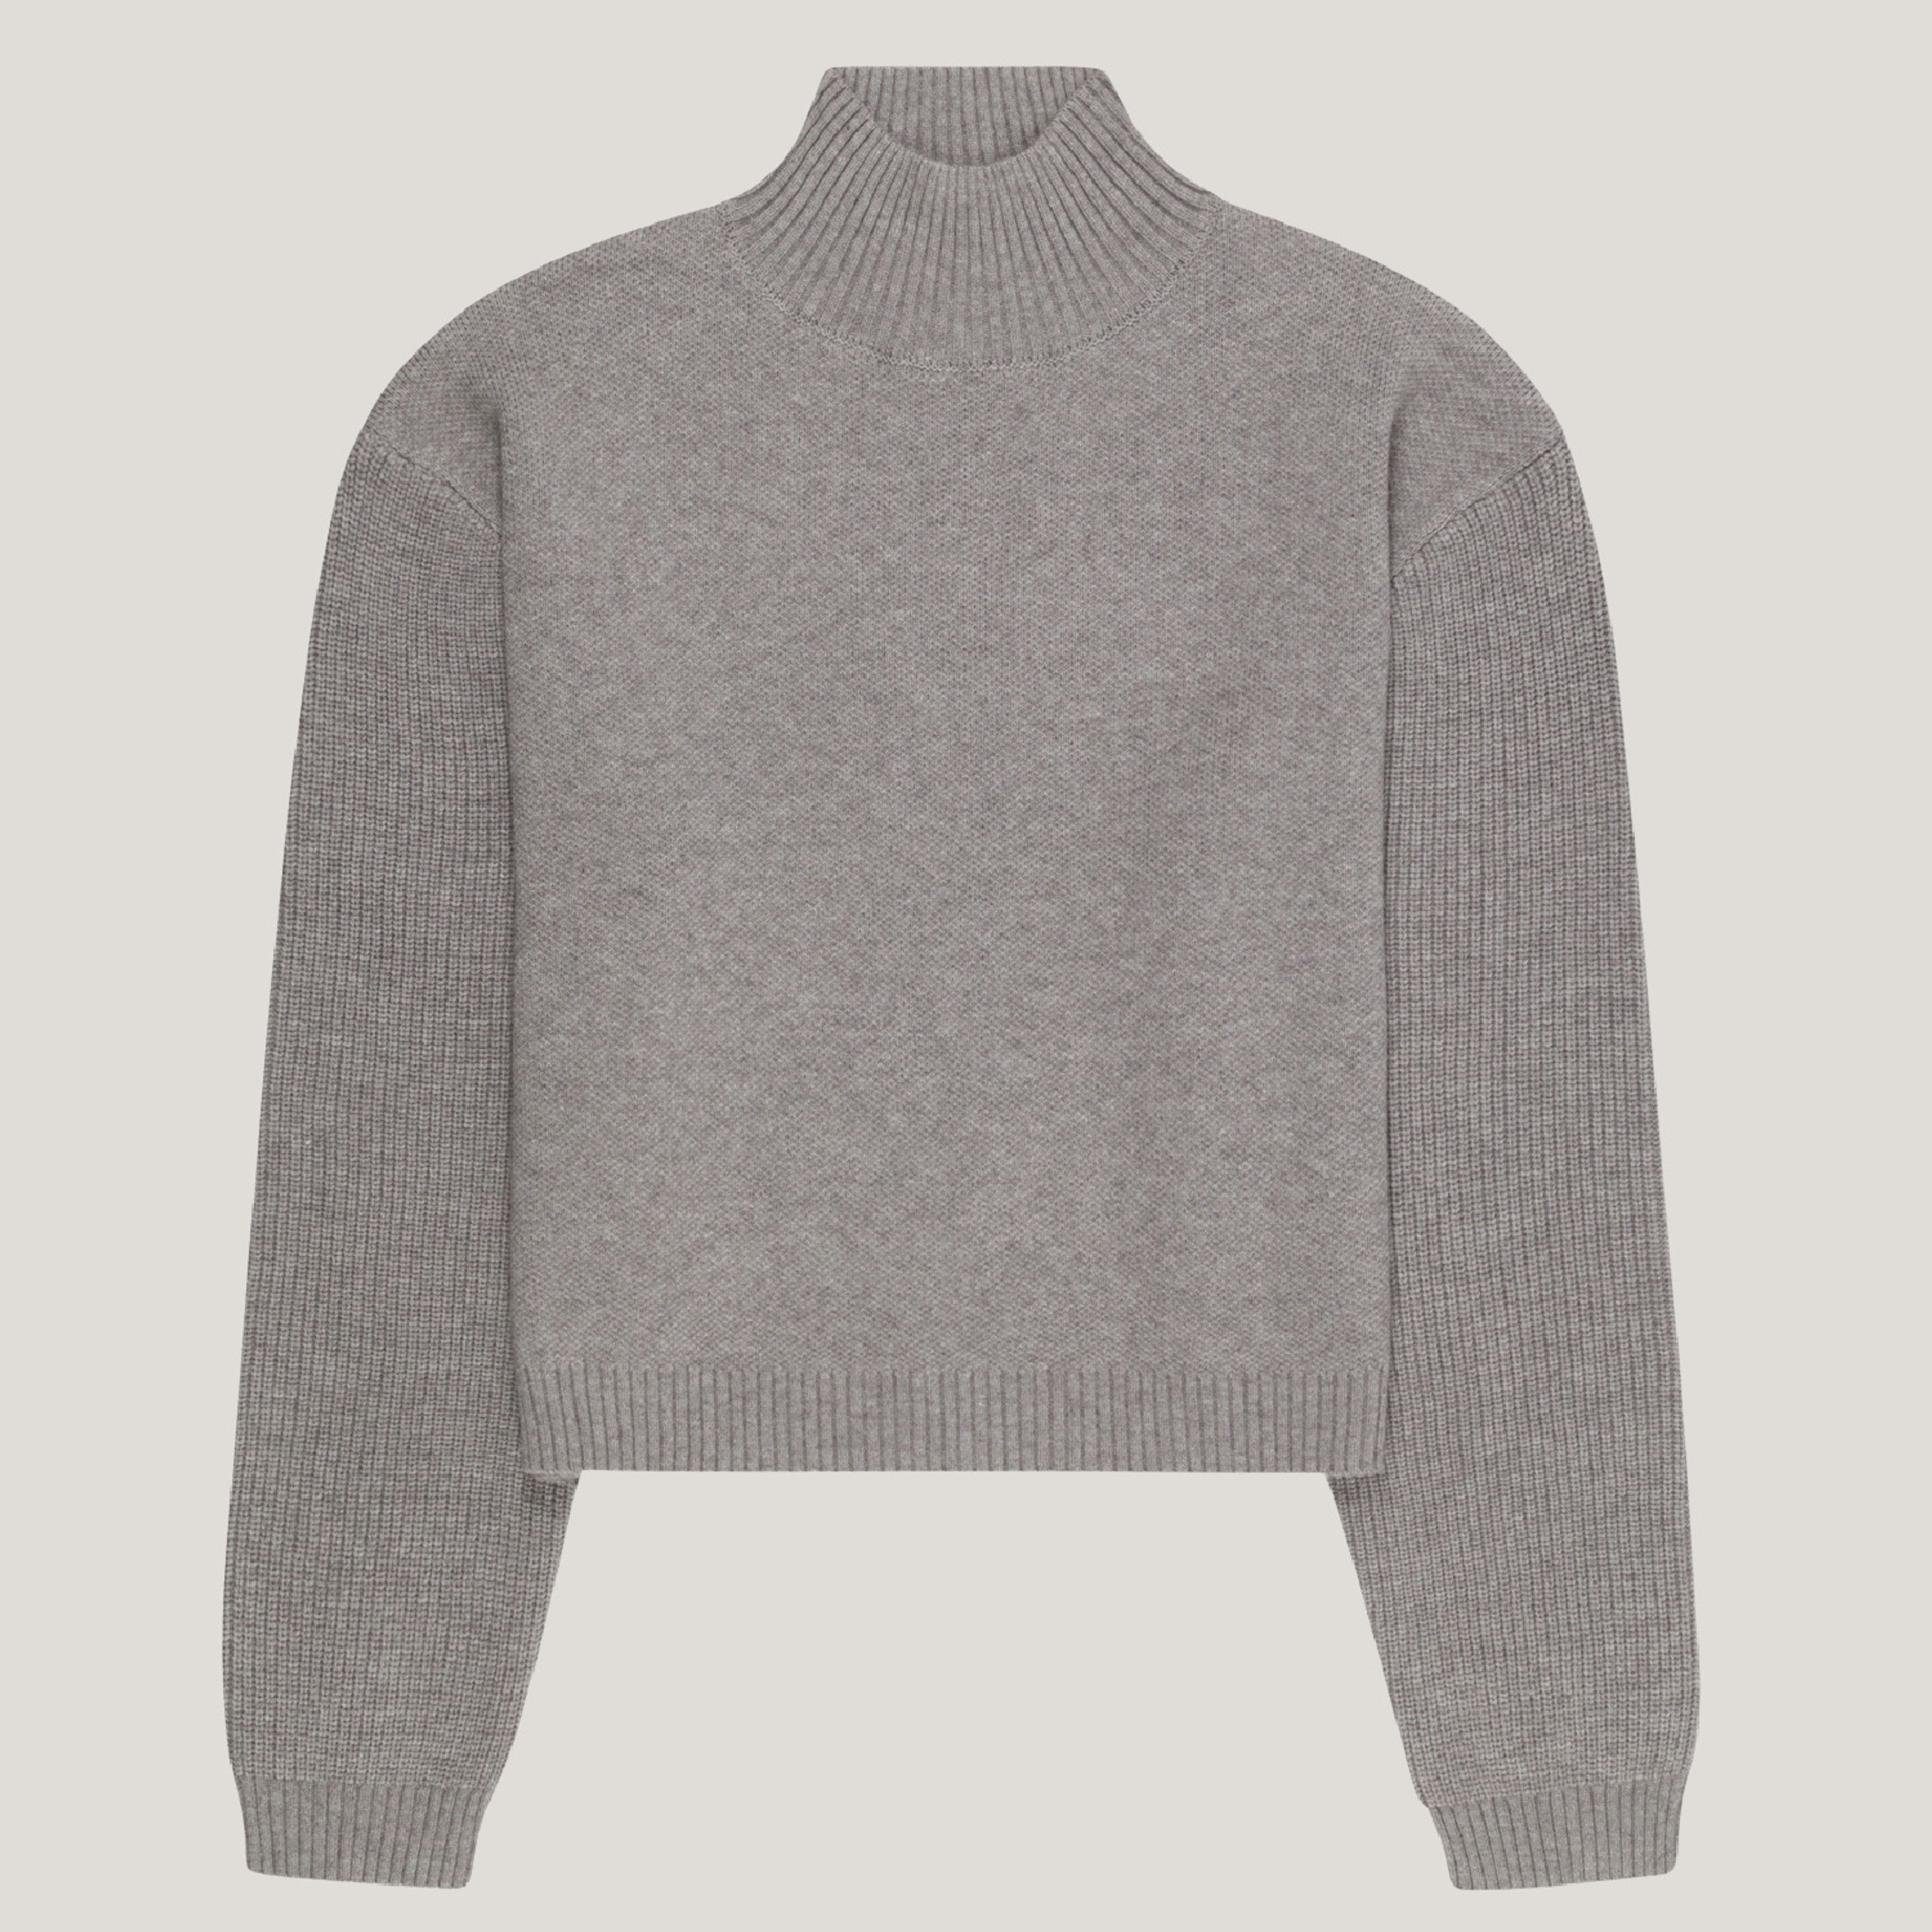 Keaton Mock Neck Sweater - Steel Grey | EllandEmm